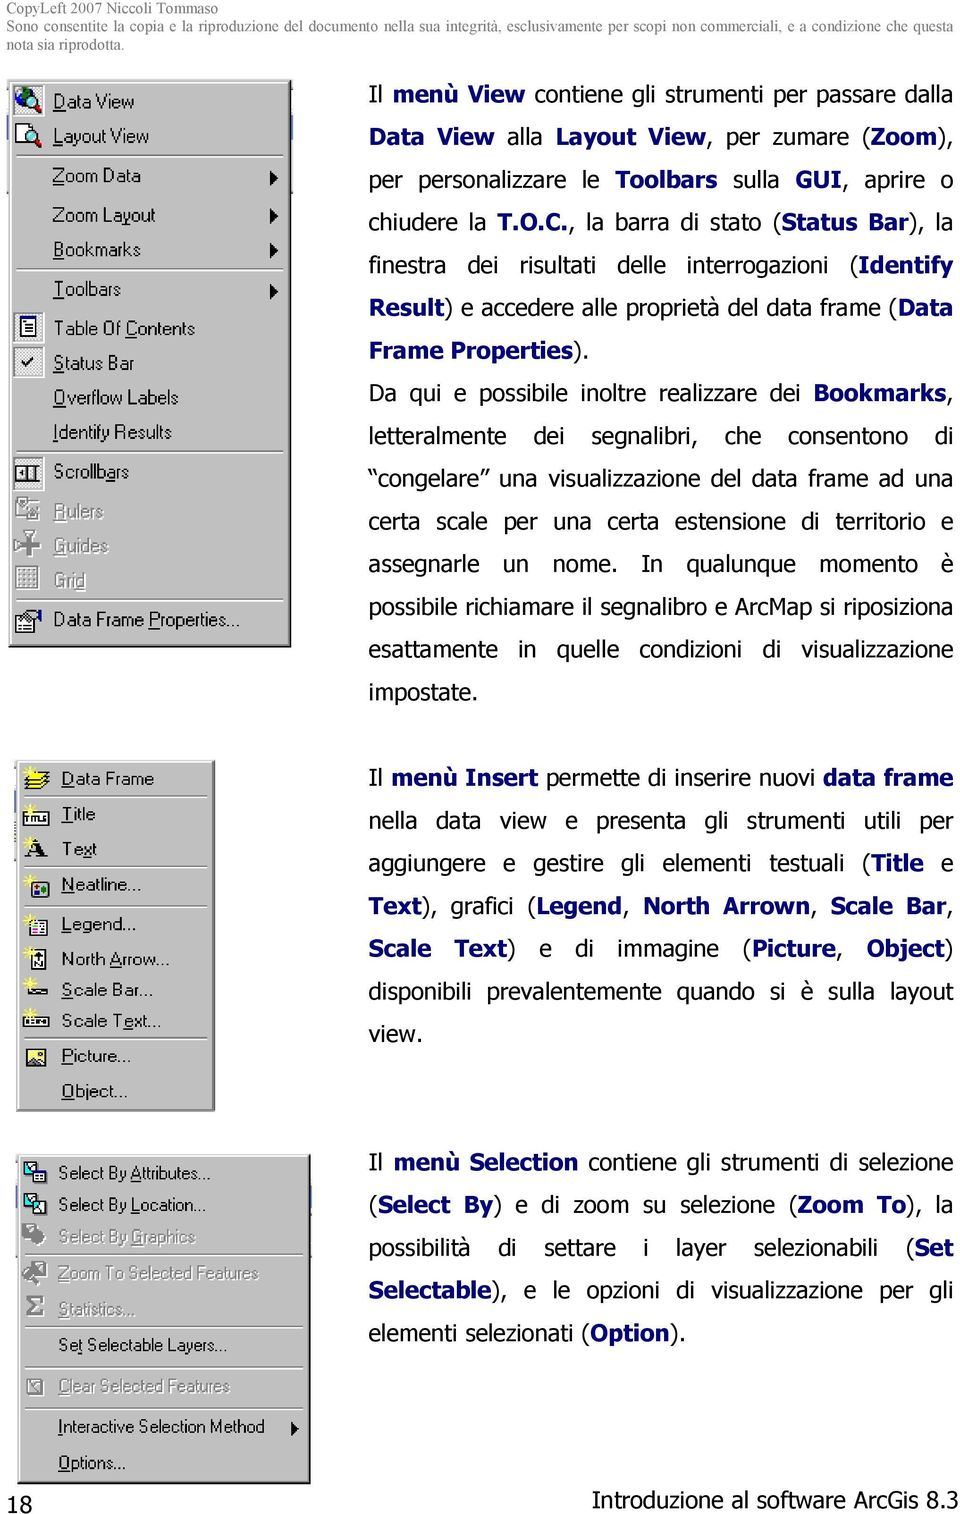 la personalizzazione delle toolbars (Customize) e il caricamento delle estensioni disponibili (Extensions).